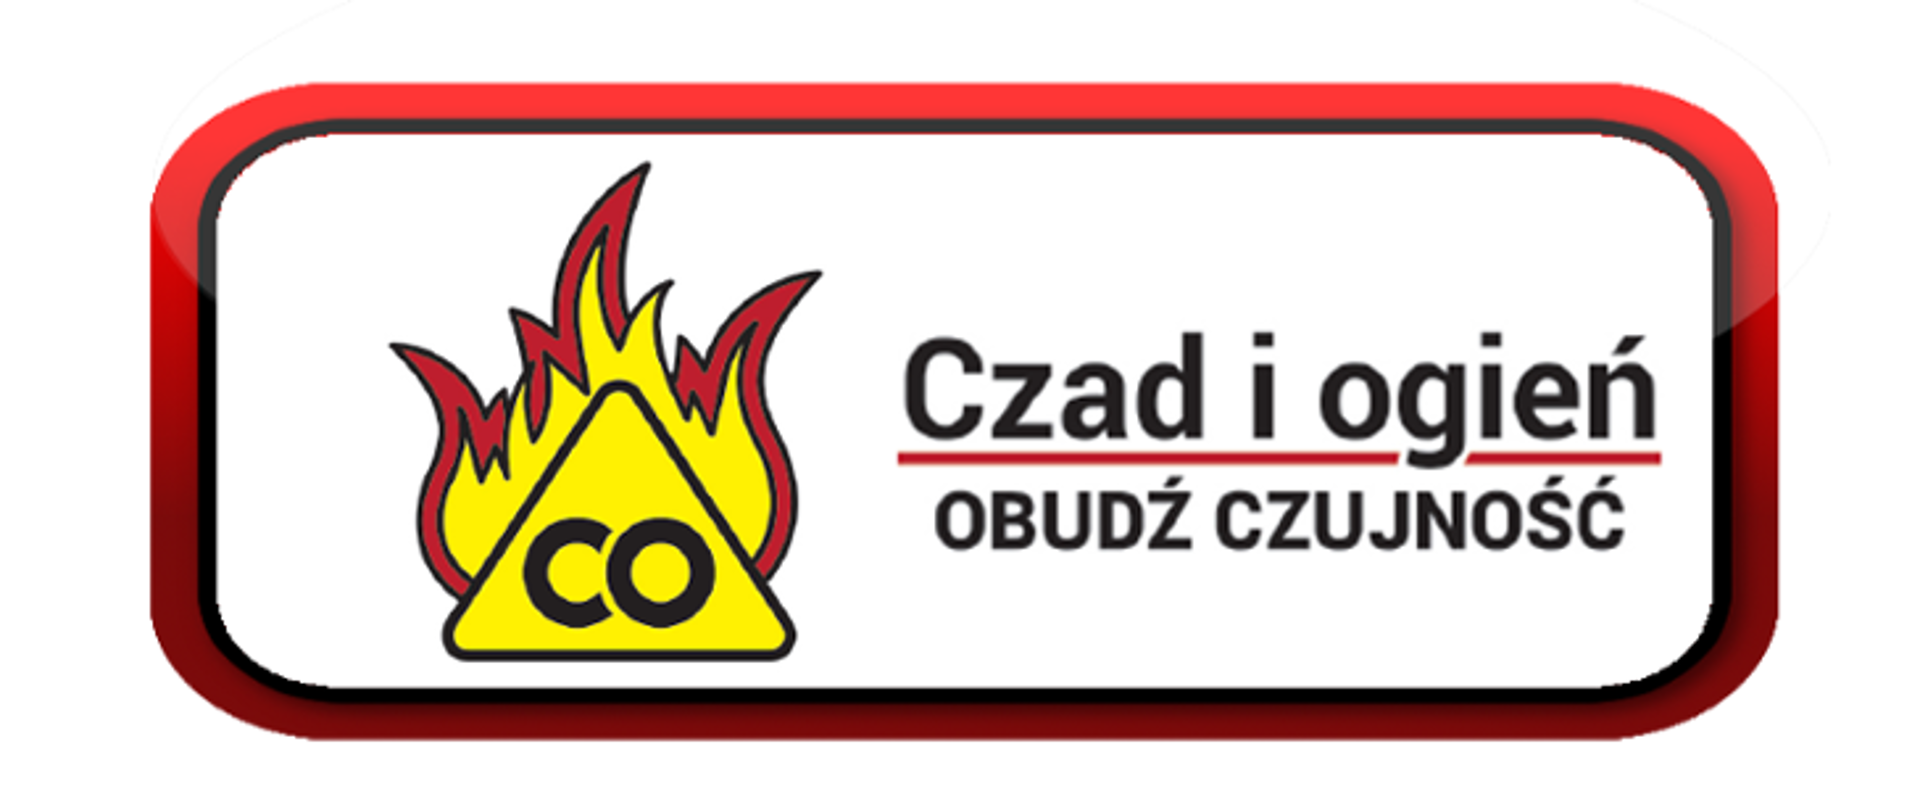 Zdjęcie przedstawia logo kampanii, w ramce ogień i napis czad i ogień, obudź czujność